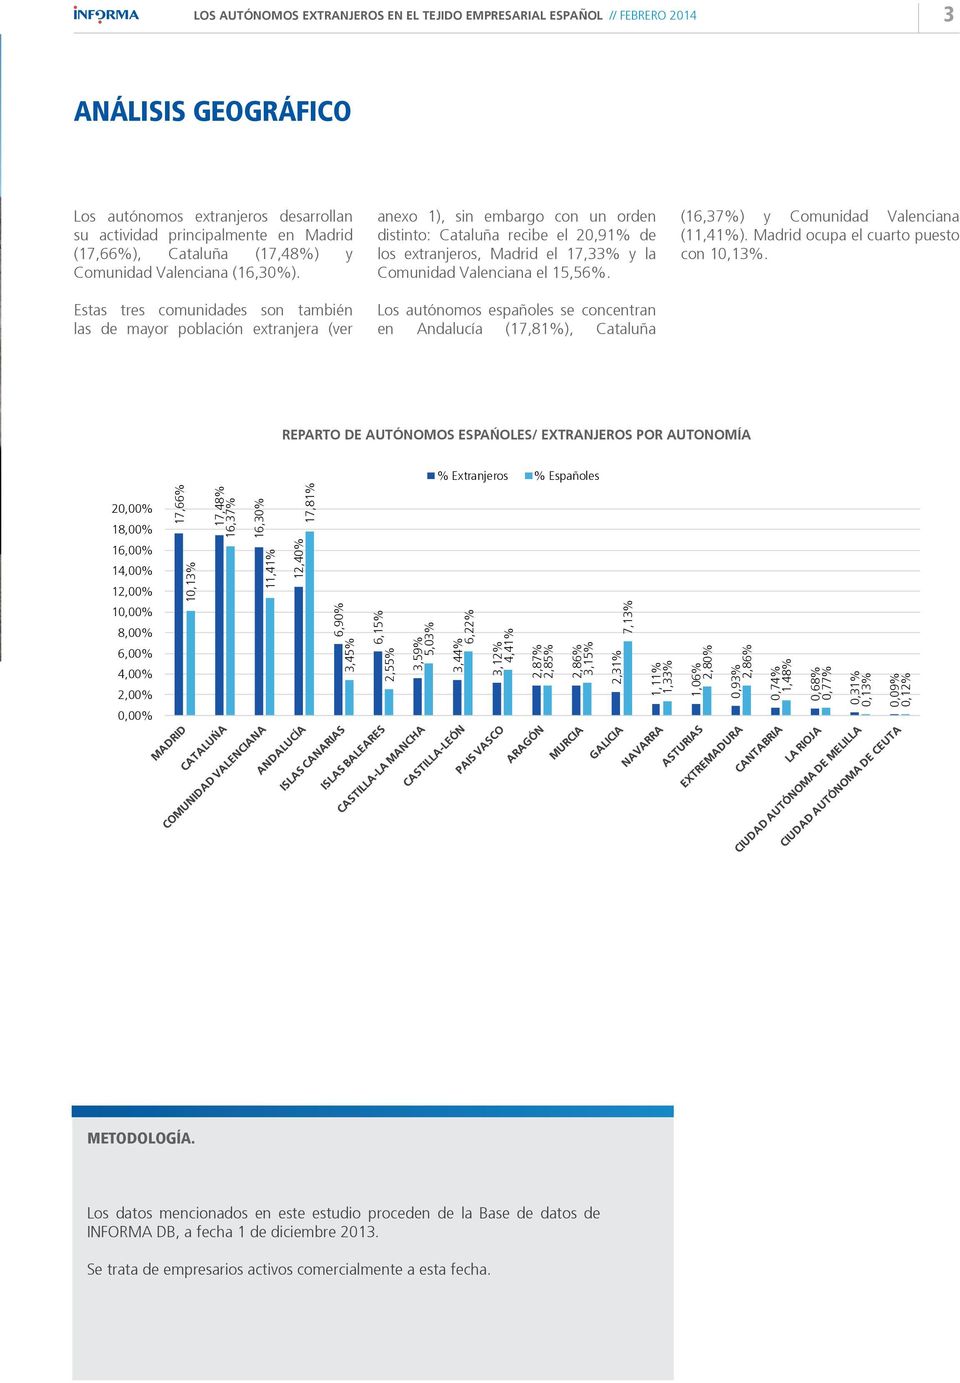 Valenciana el 15,56%. Los autónomos españoles se concentran en Andalucía (17,81%), Cataluña (16,37%) y Comunidad Valenciana (11,41%). Madrid ocupa el cuarto puesto con 10,13%.